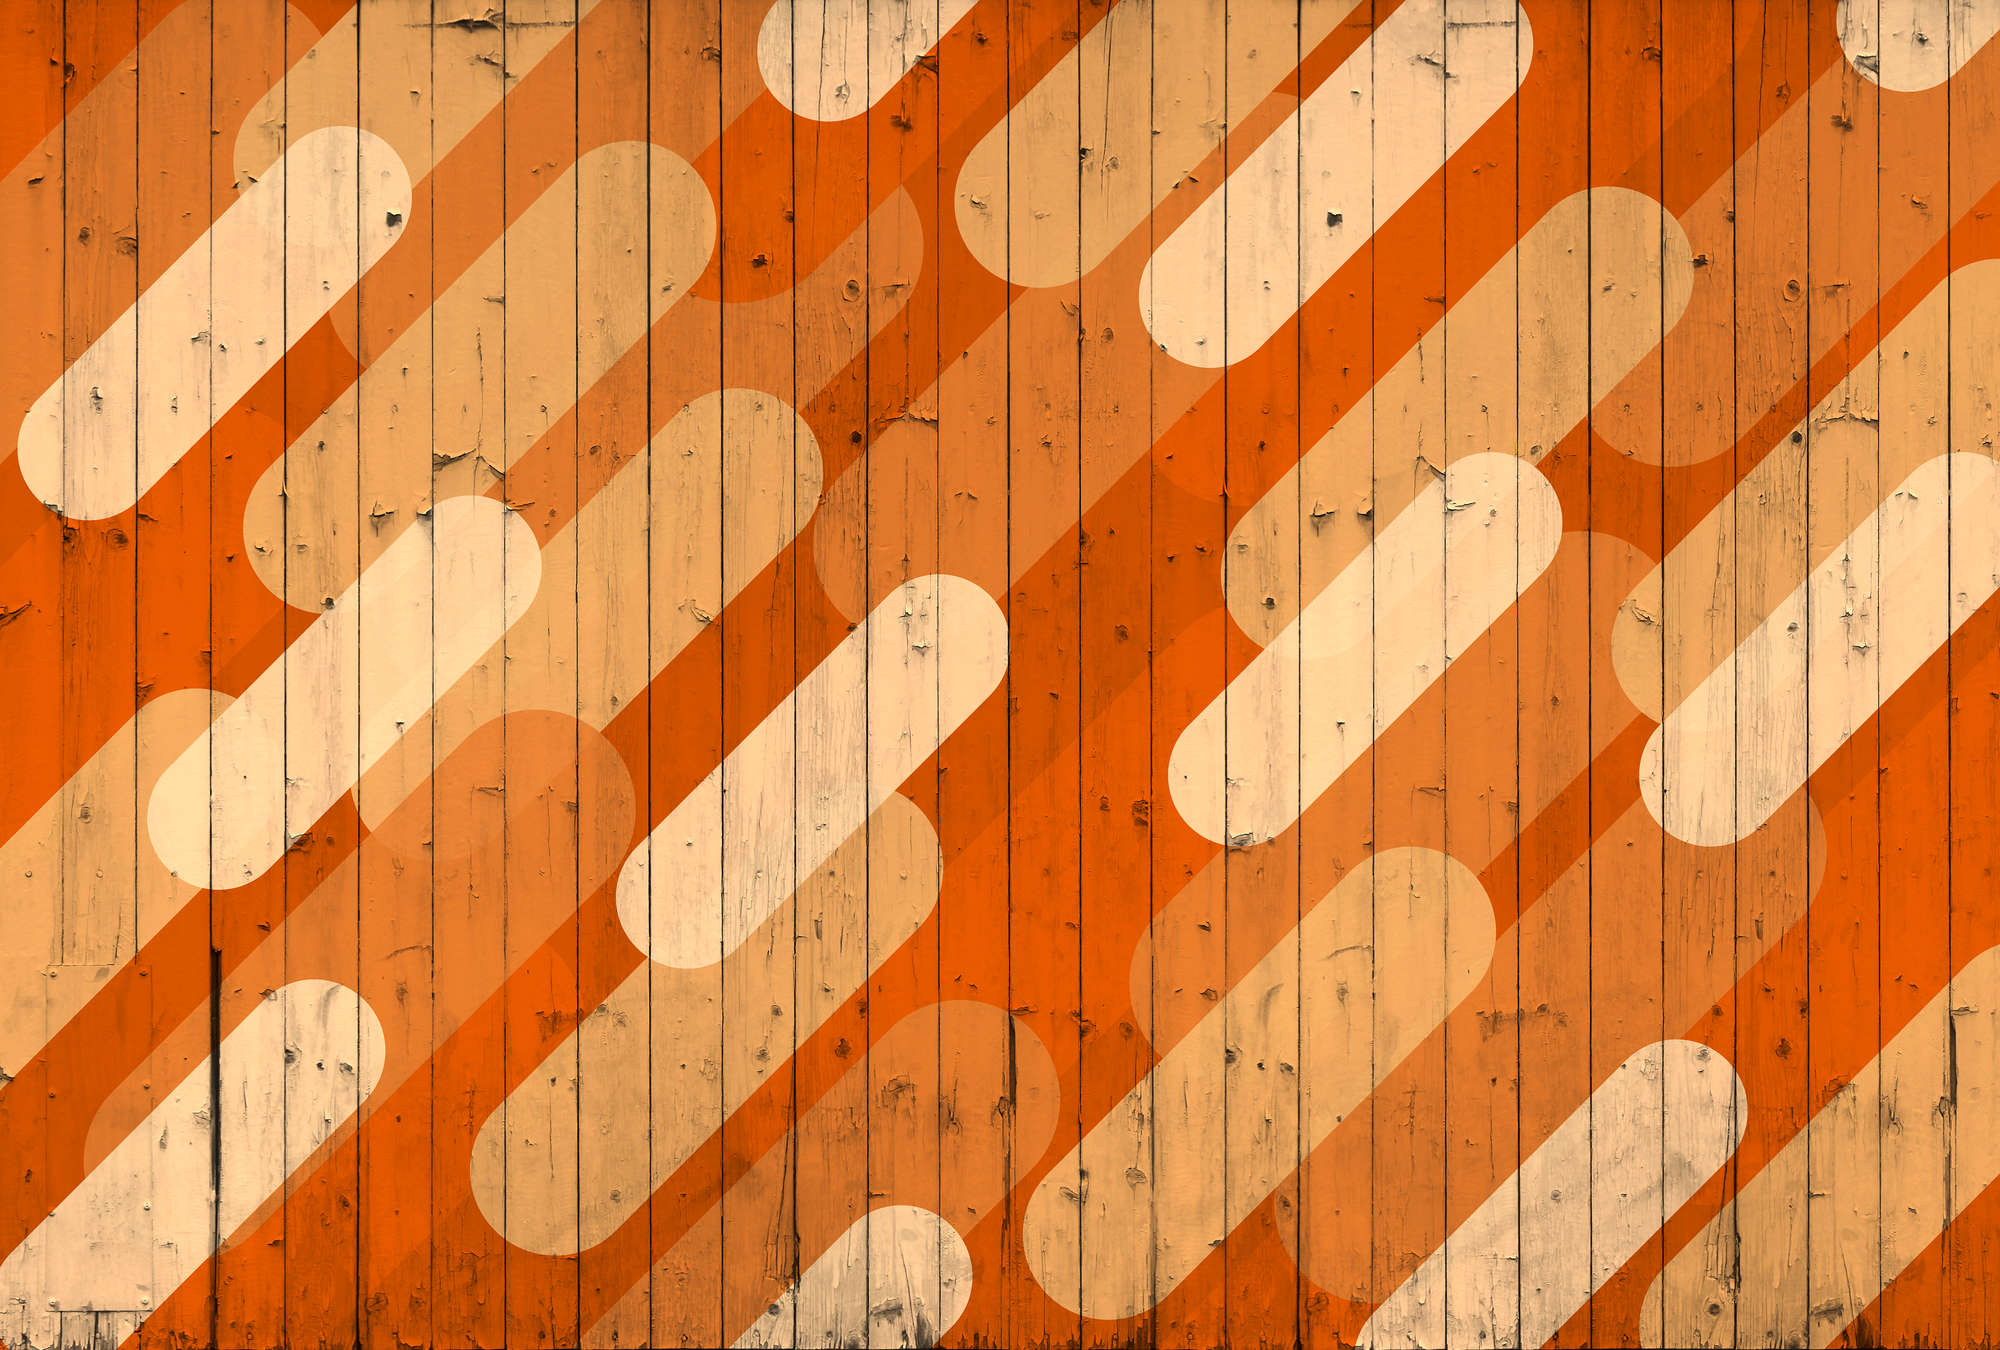             Mural de pared con aspecto de tablero y diseño de rayas diagonales - Naranja, Beige, Crema
        